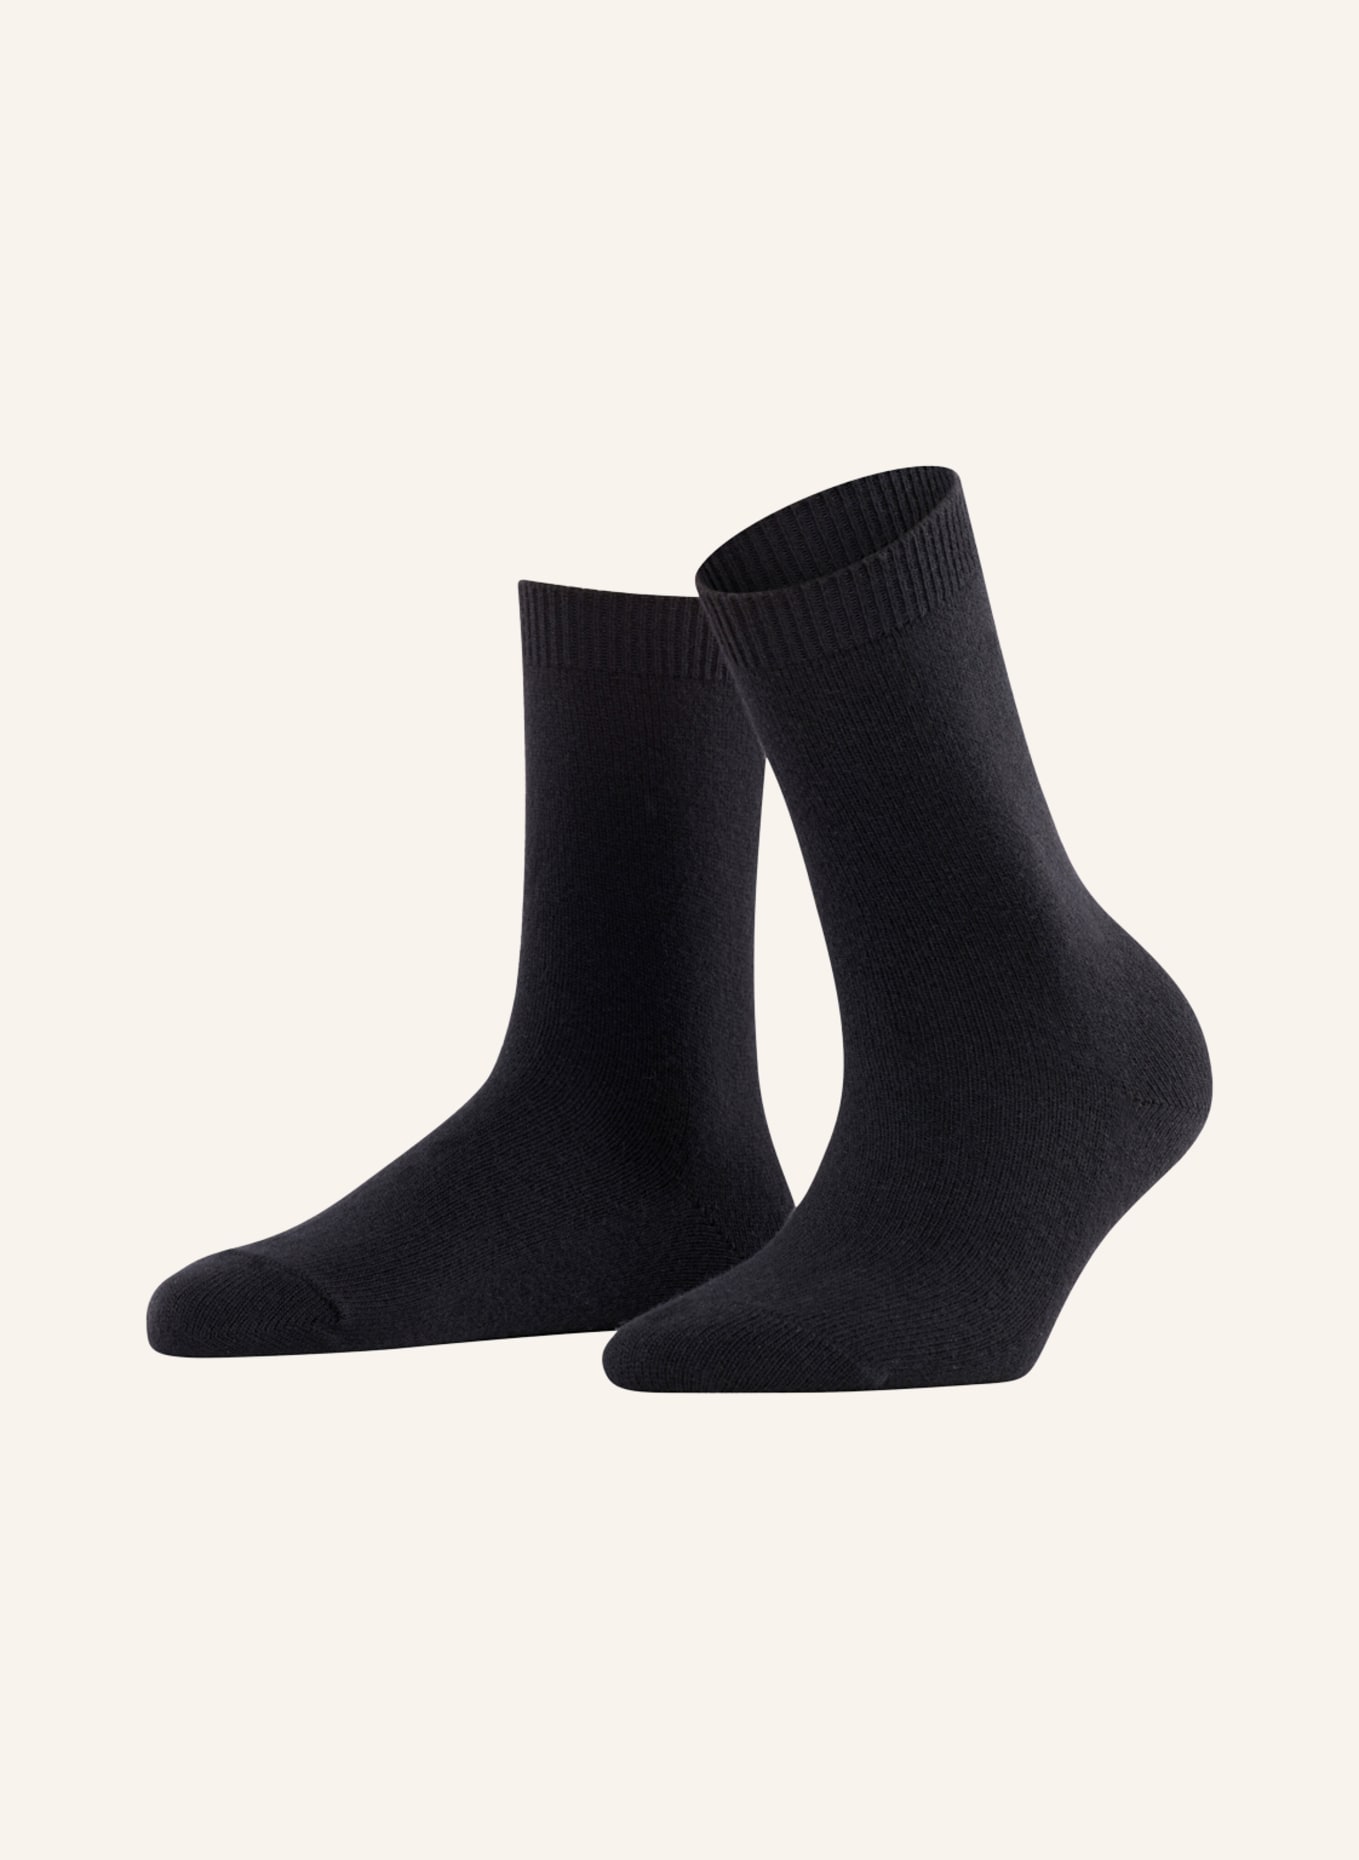 FALKE Socken COSY WOOL mit Merinowolle , Farbe: 3009 BLACK (Bild 1)